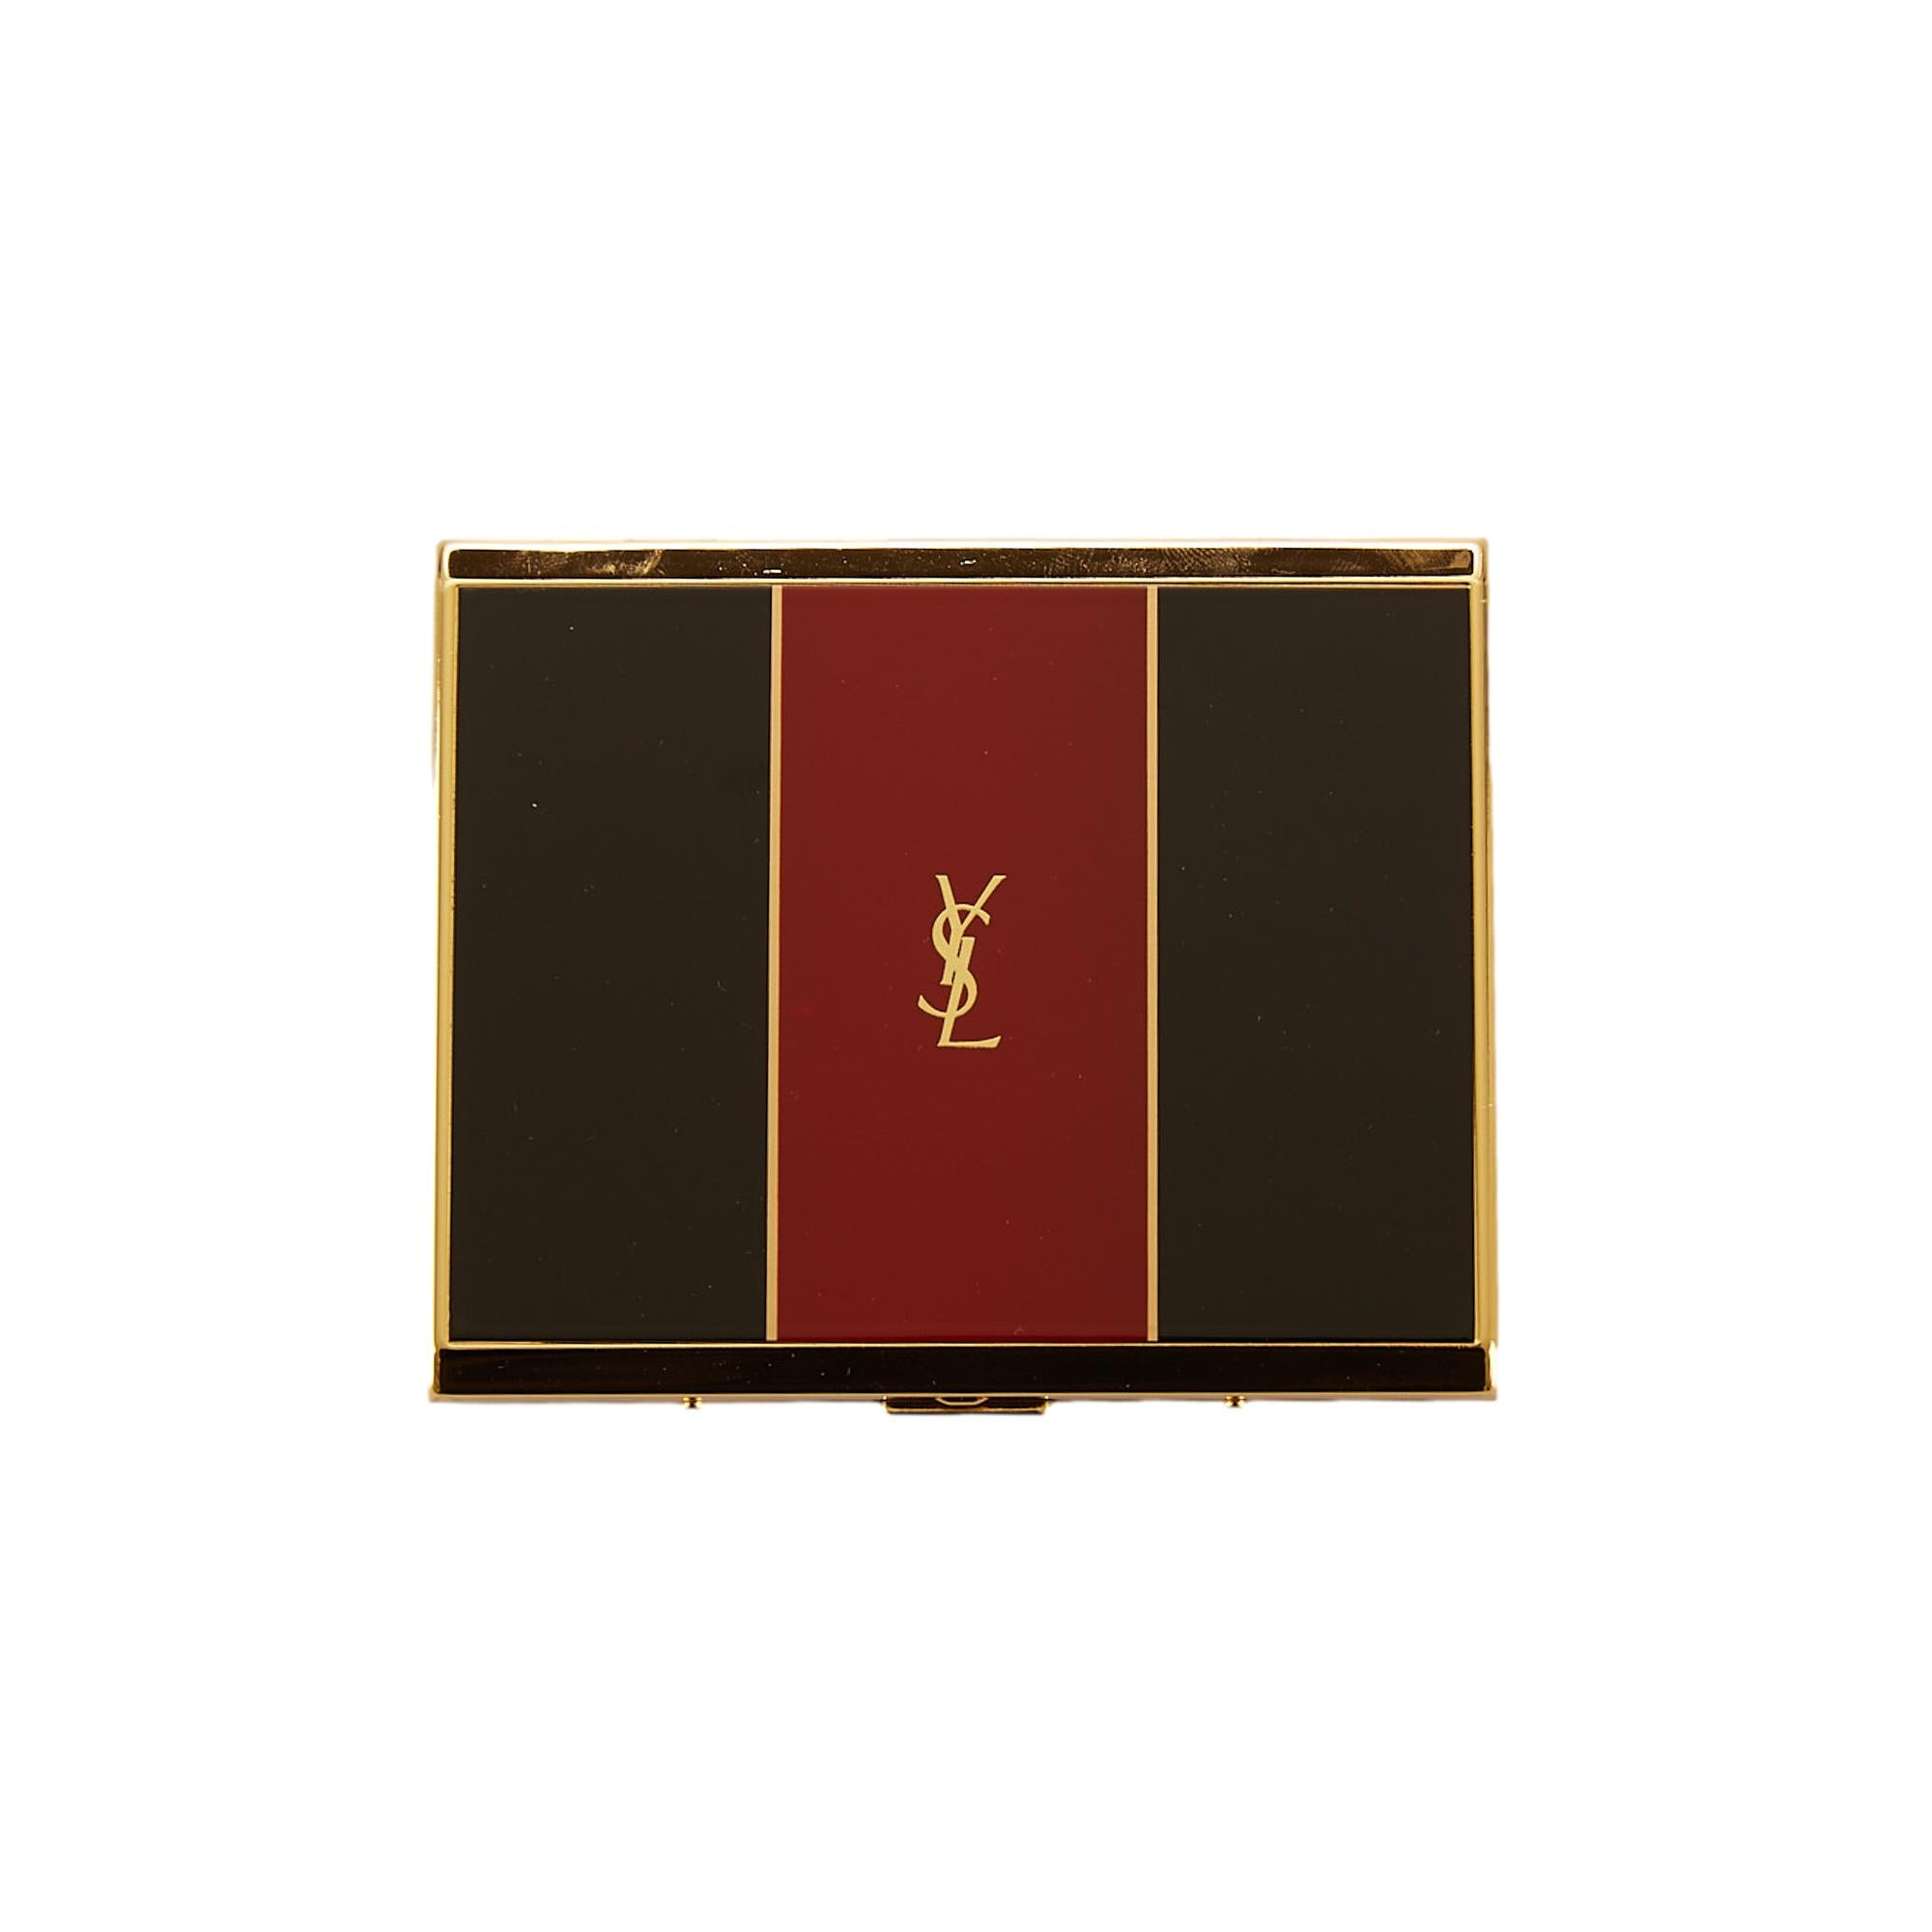 Yves Saint Laurent vintage cigarette case / business card case 1970 - 1975